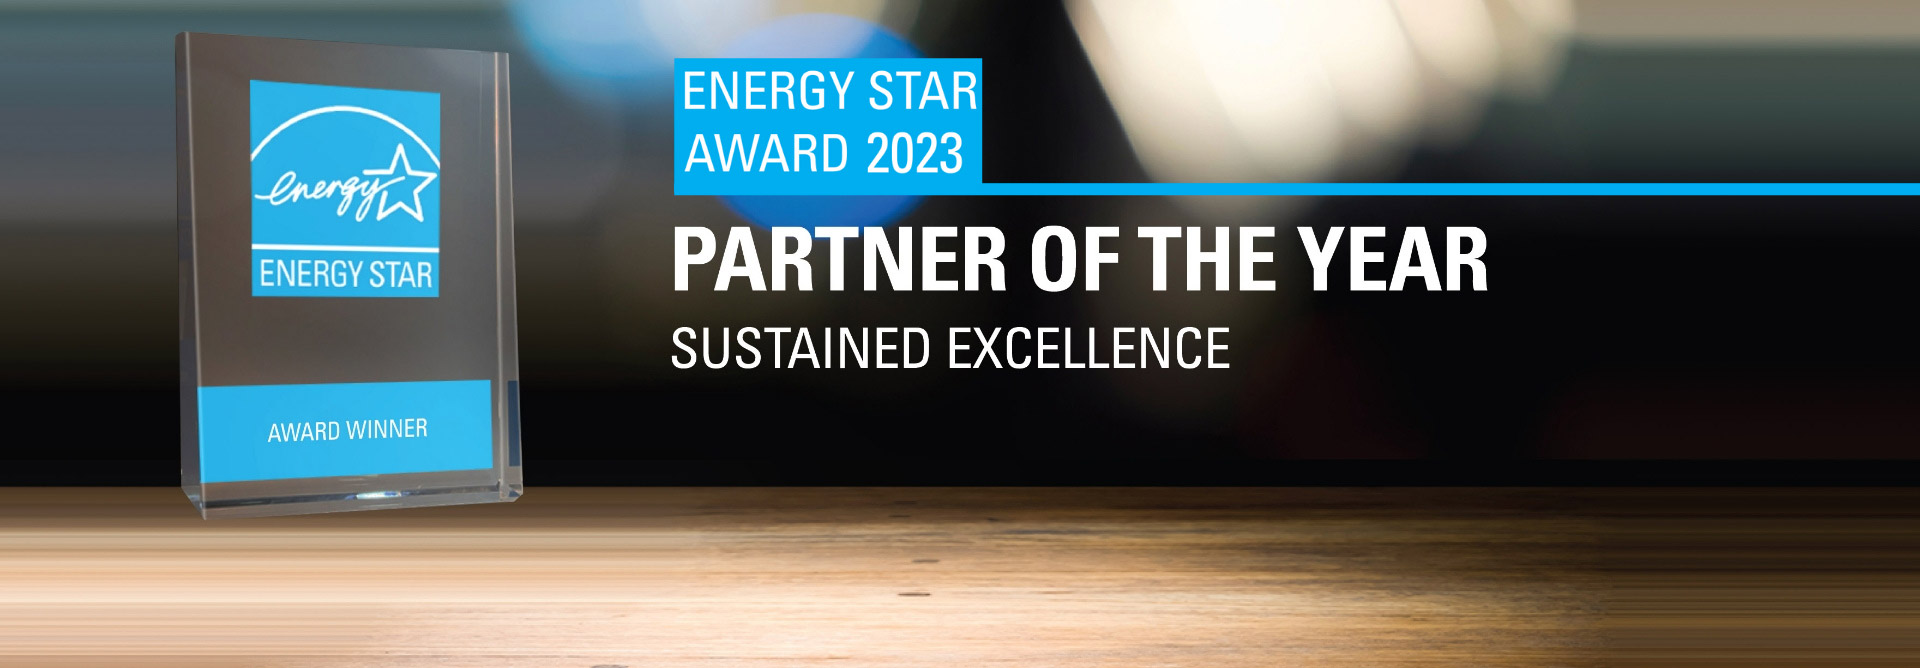 EnergyStar award